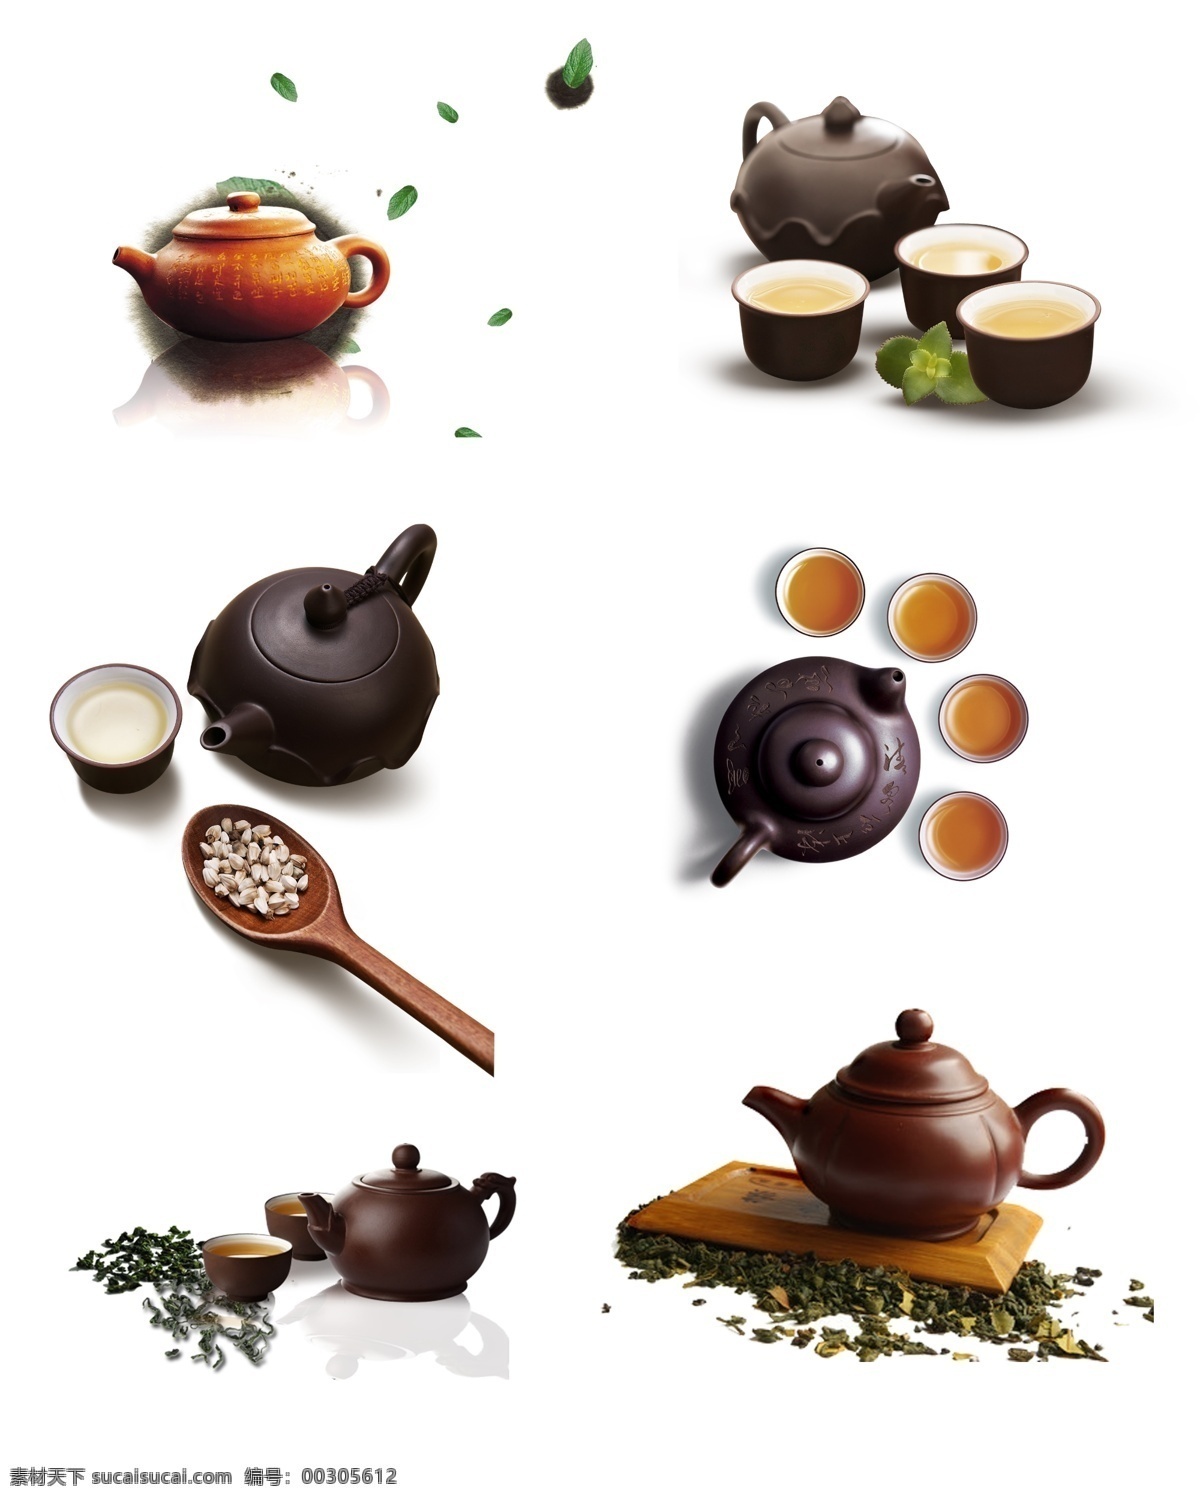 茶具 茶壶 茶叶 茶杯 古典茶具 茶具元素 茶道 茶艺 中国风 谷雨茶 宣传展板模板 展板模板